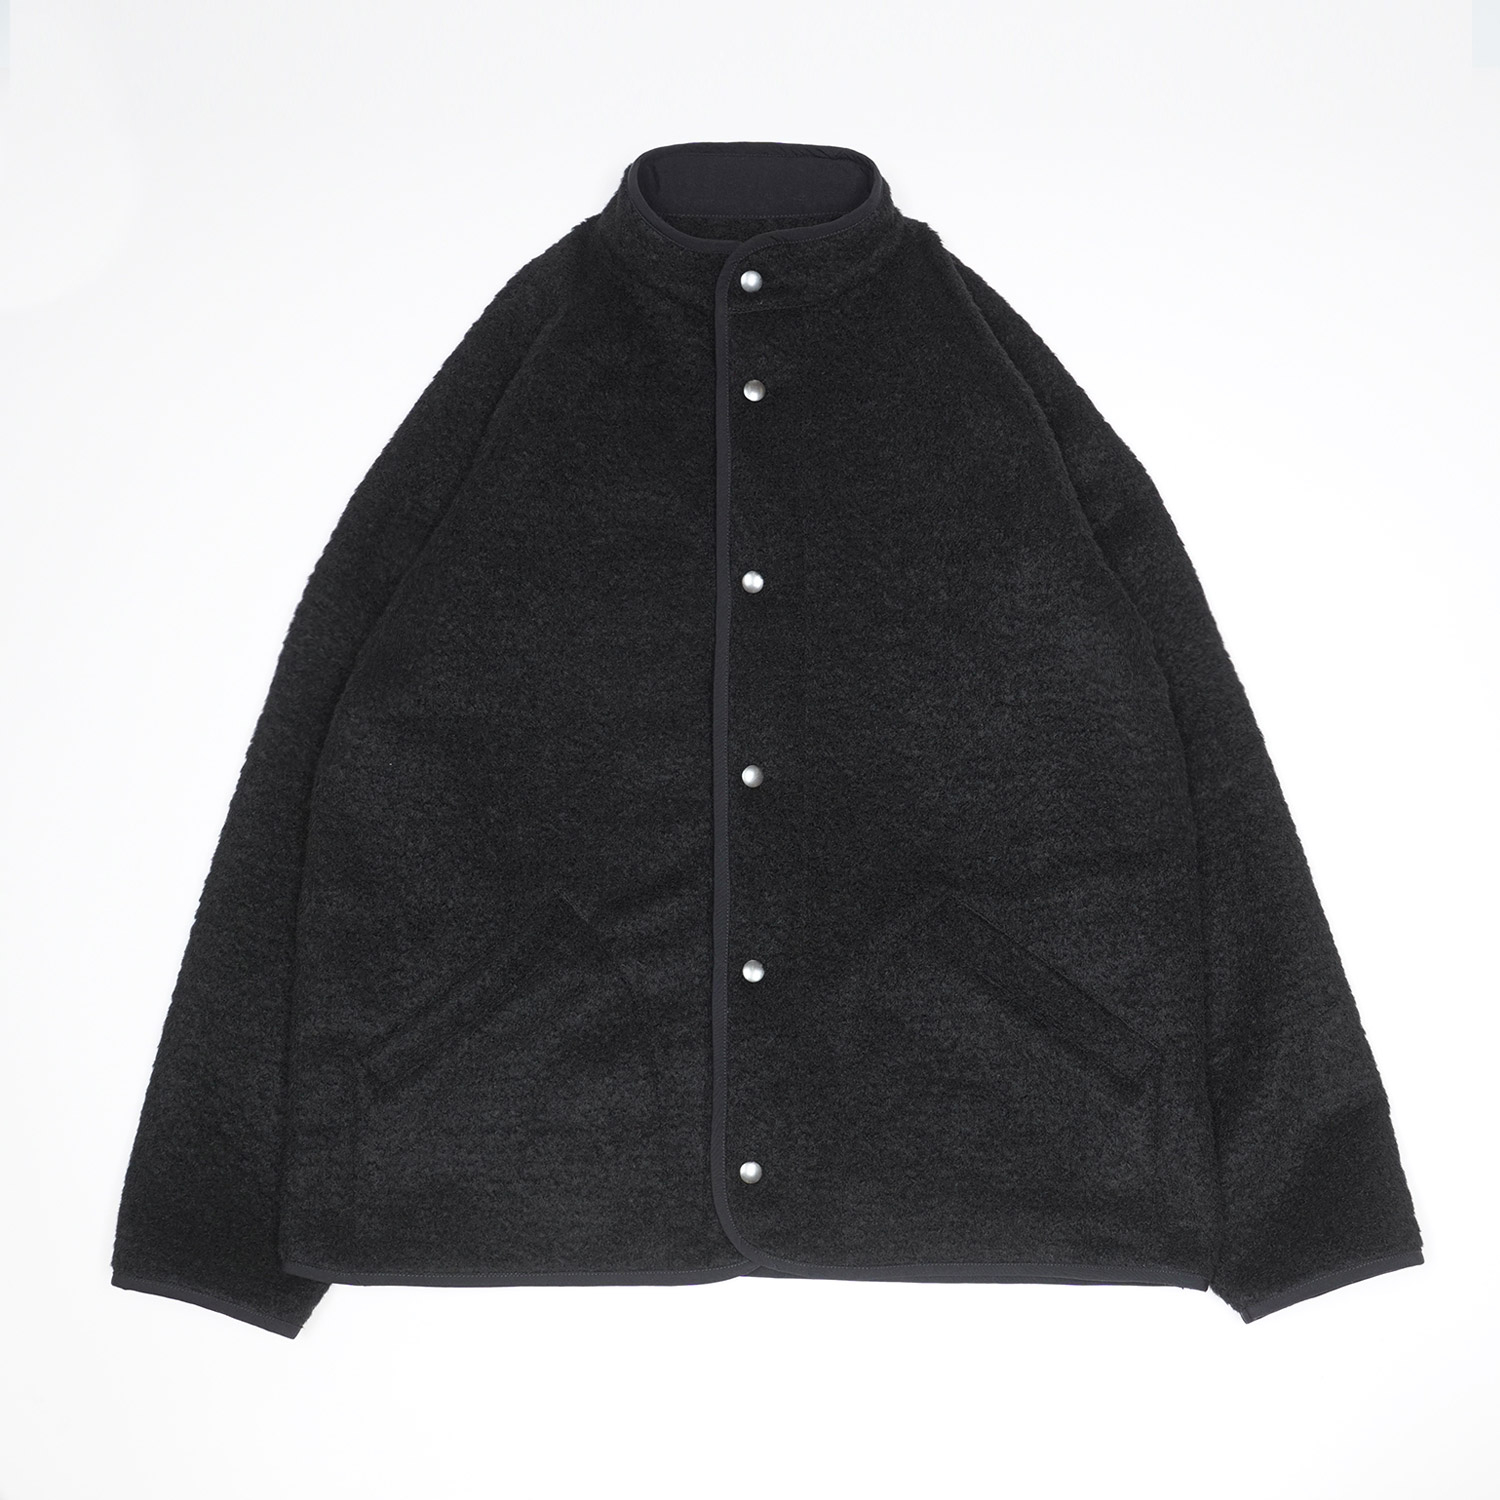 CONTOUR W Jacket in Black color by Arpenteur